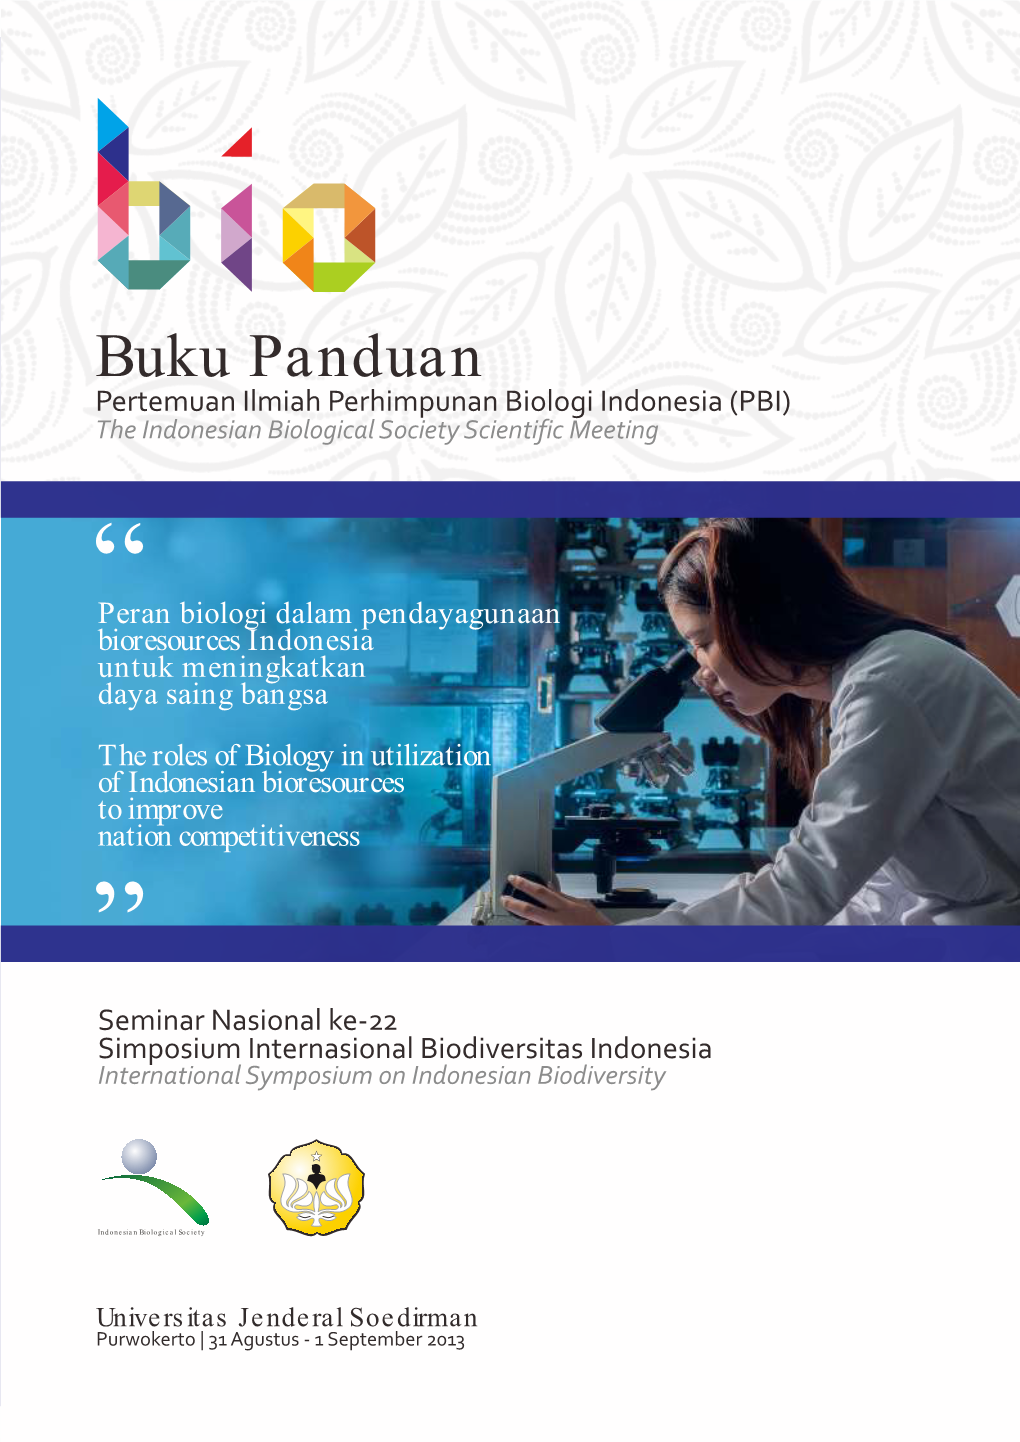 Buku Panduan Pertemuan Ilmiah Perhimpunan Biologi Indonesia (PBI) the Indonesian Biological Society Scientific Meeting